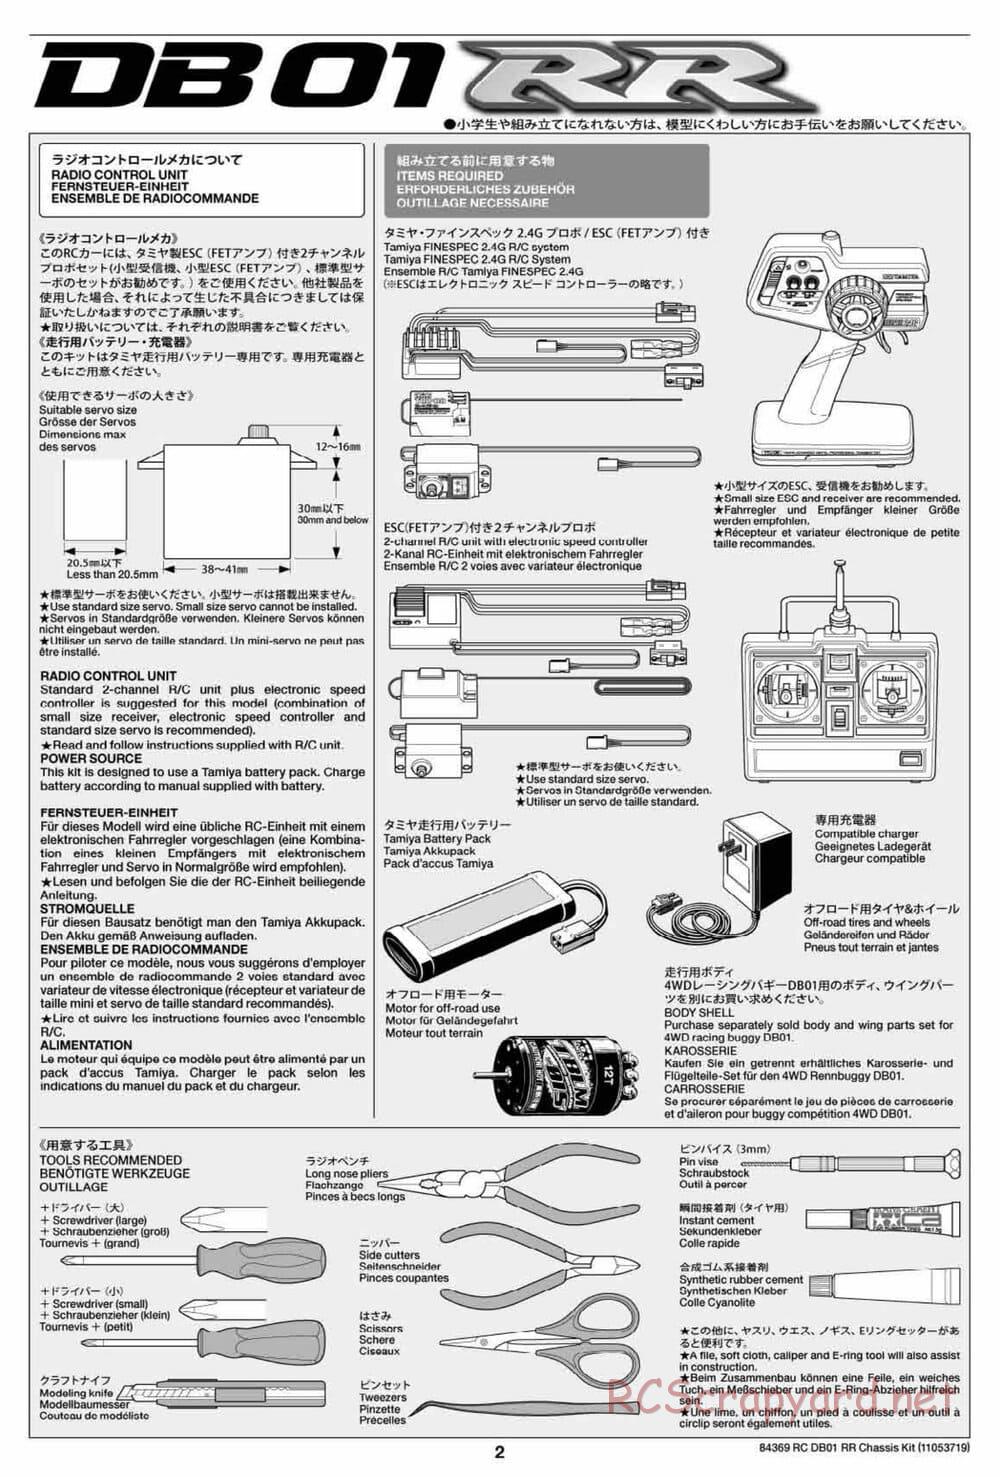 Tamiya - DB-01 RR Chassis - Manual - Page 2